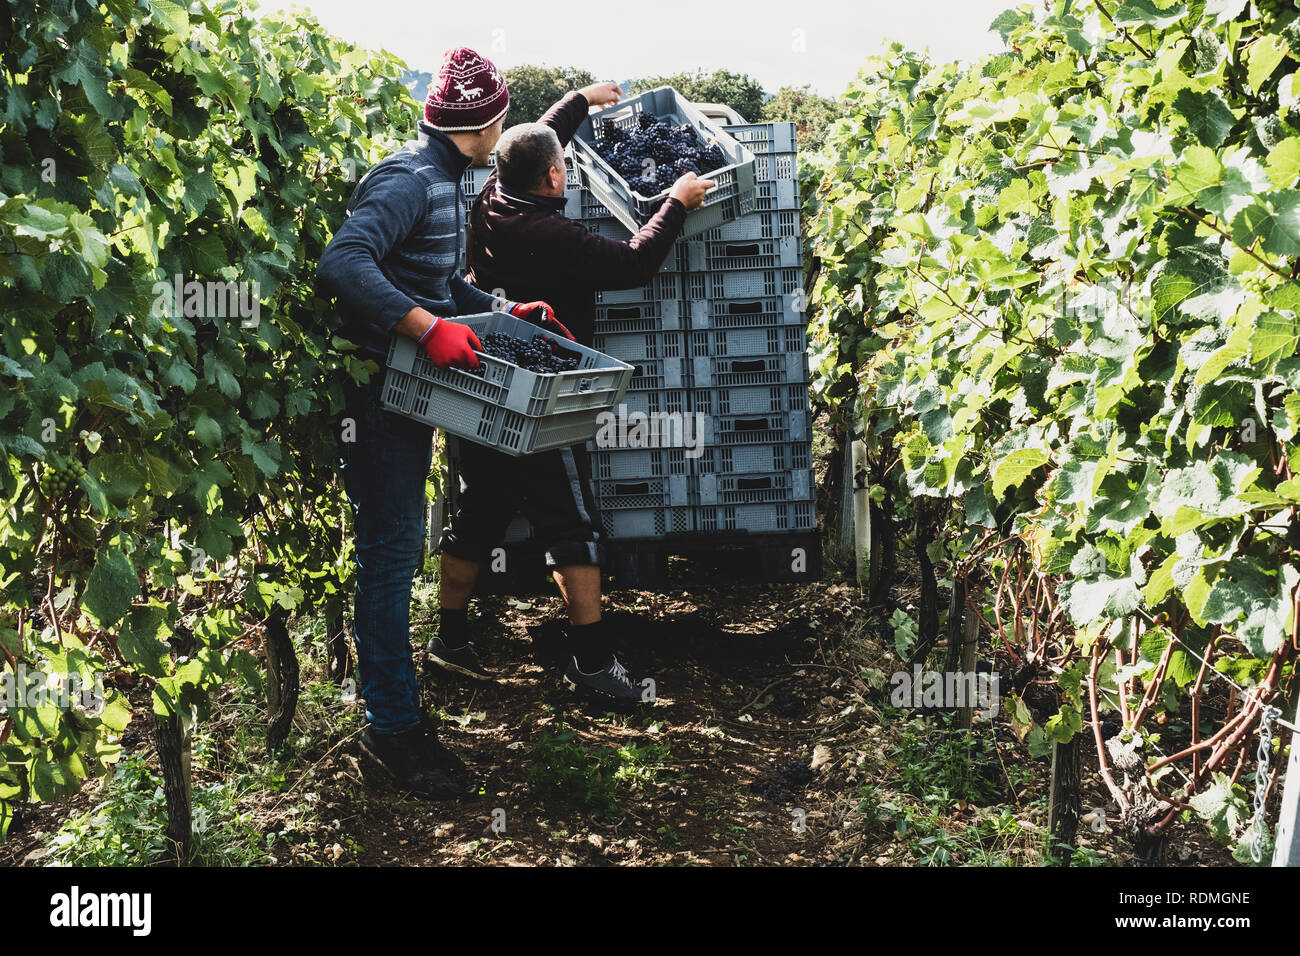 Zwei Männer stehen in einem Weinberg, Ernte Trauben von schwarzen Trauben, Stapeln grauen Kunststoffkisten. Stockfoto